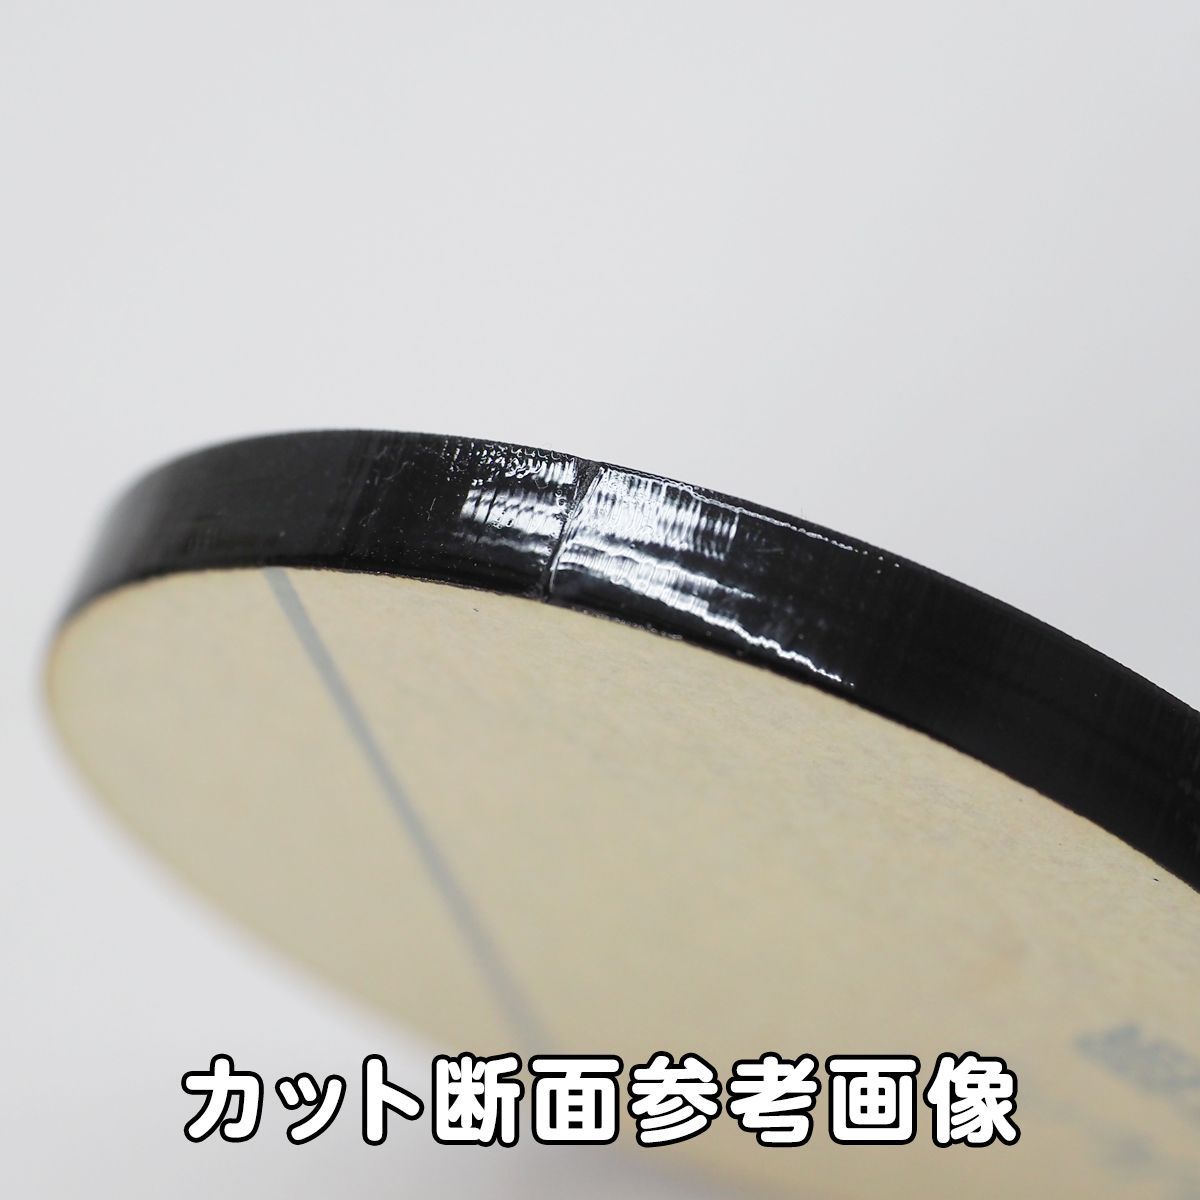 黒 アクリル 5mm厚 円形 直径4cm 10個セット - メルカリ